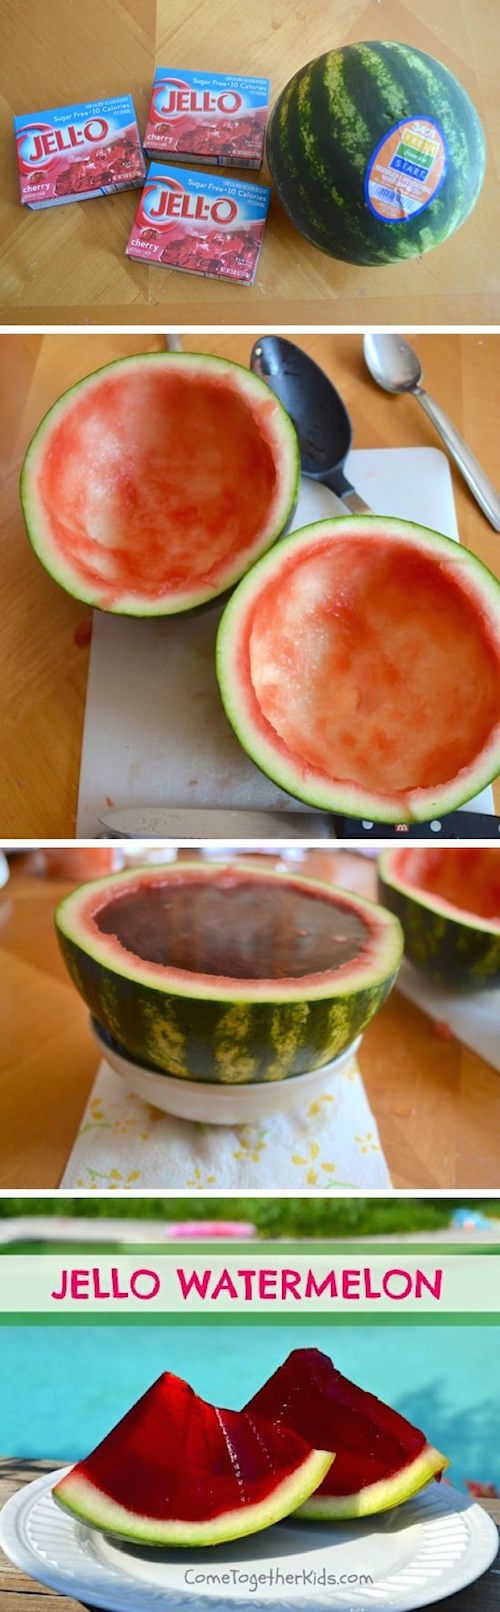 All Created - Watermelon Jello